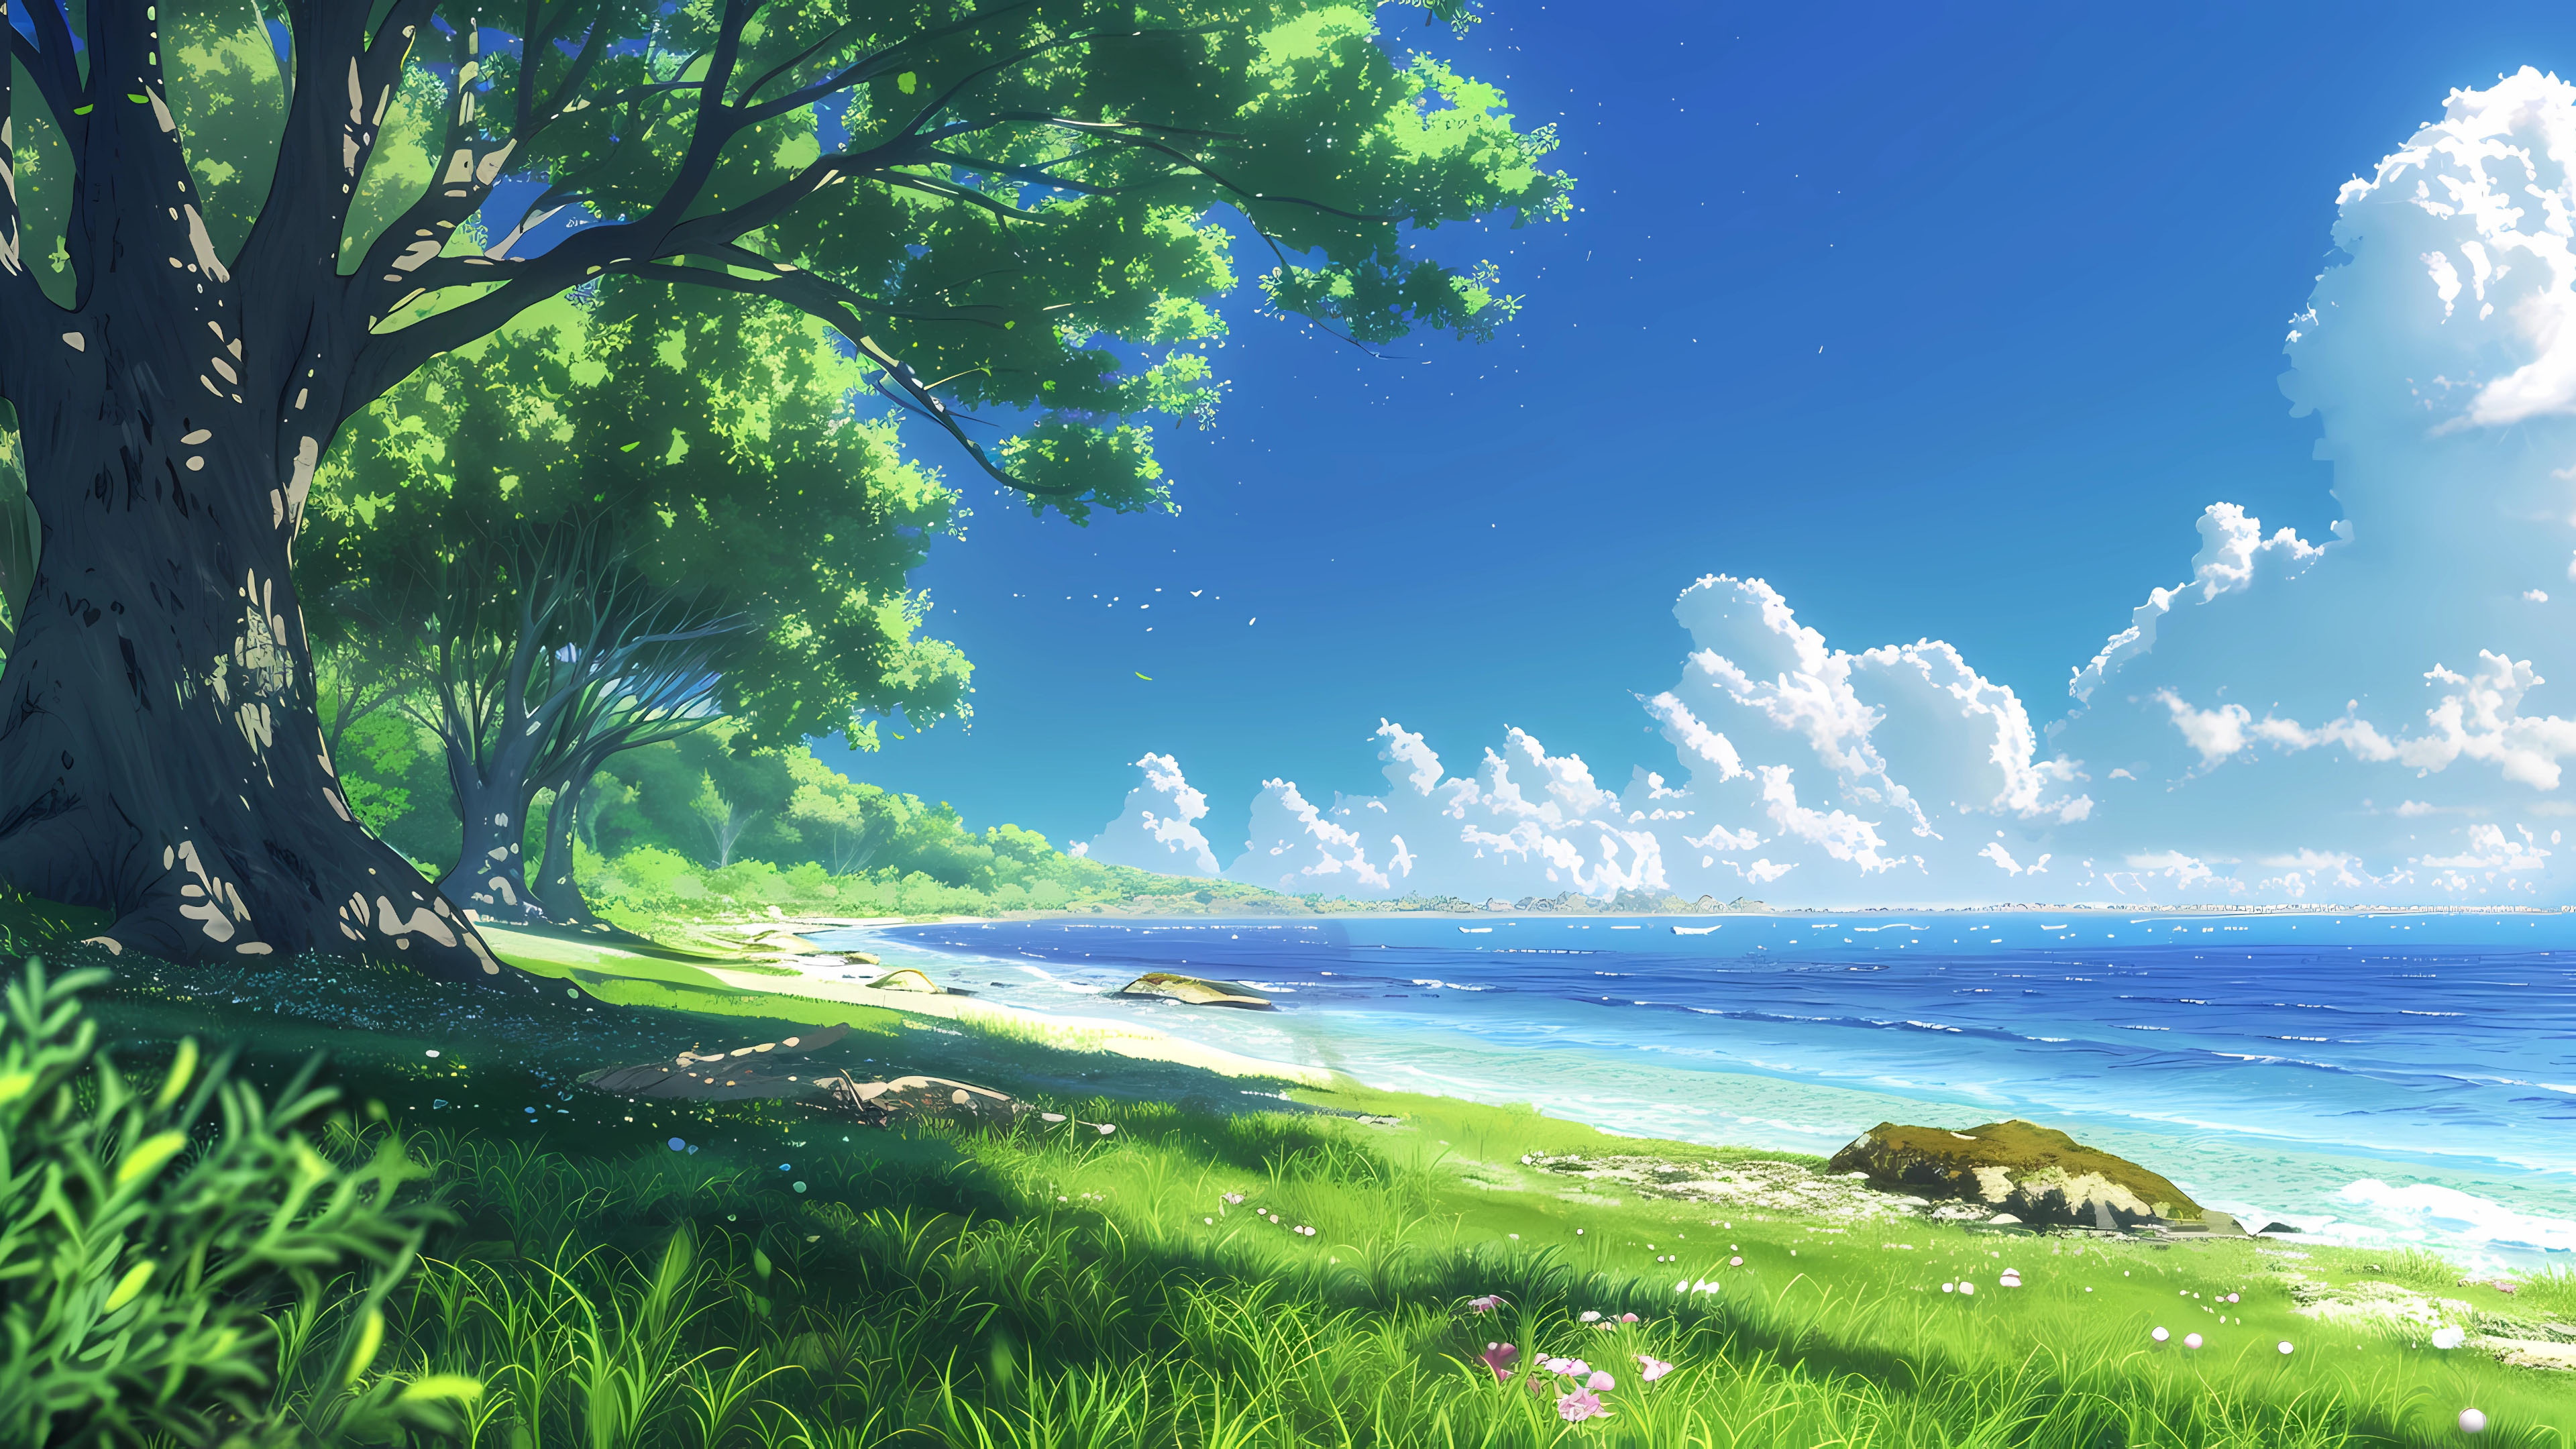 动漫卡通,清凉一夏,夏天海边风景,绿树,草地,蓝天白云